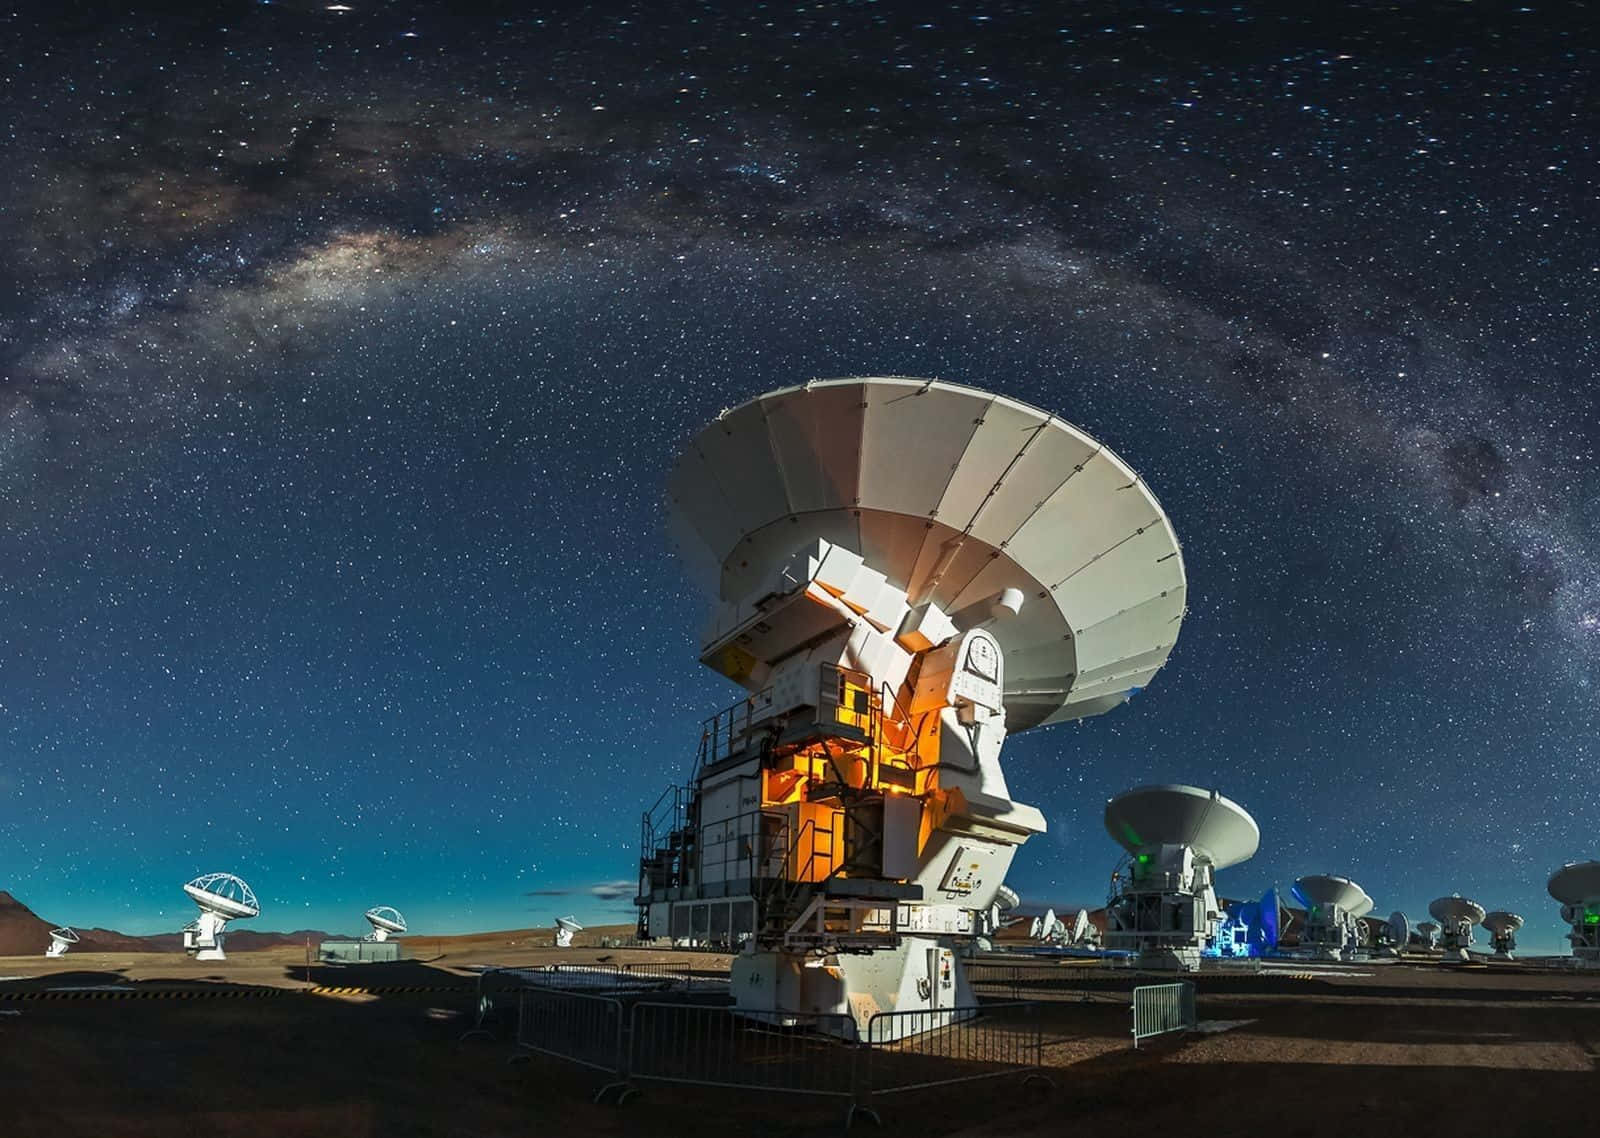 Unradio Telescopio Masivo Escaneando El Cielo Nocturno En Busca De Misterios Cósmicos. Fondo de pantalla